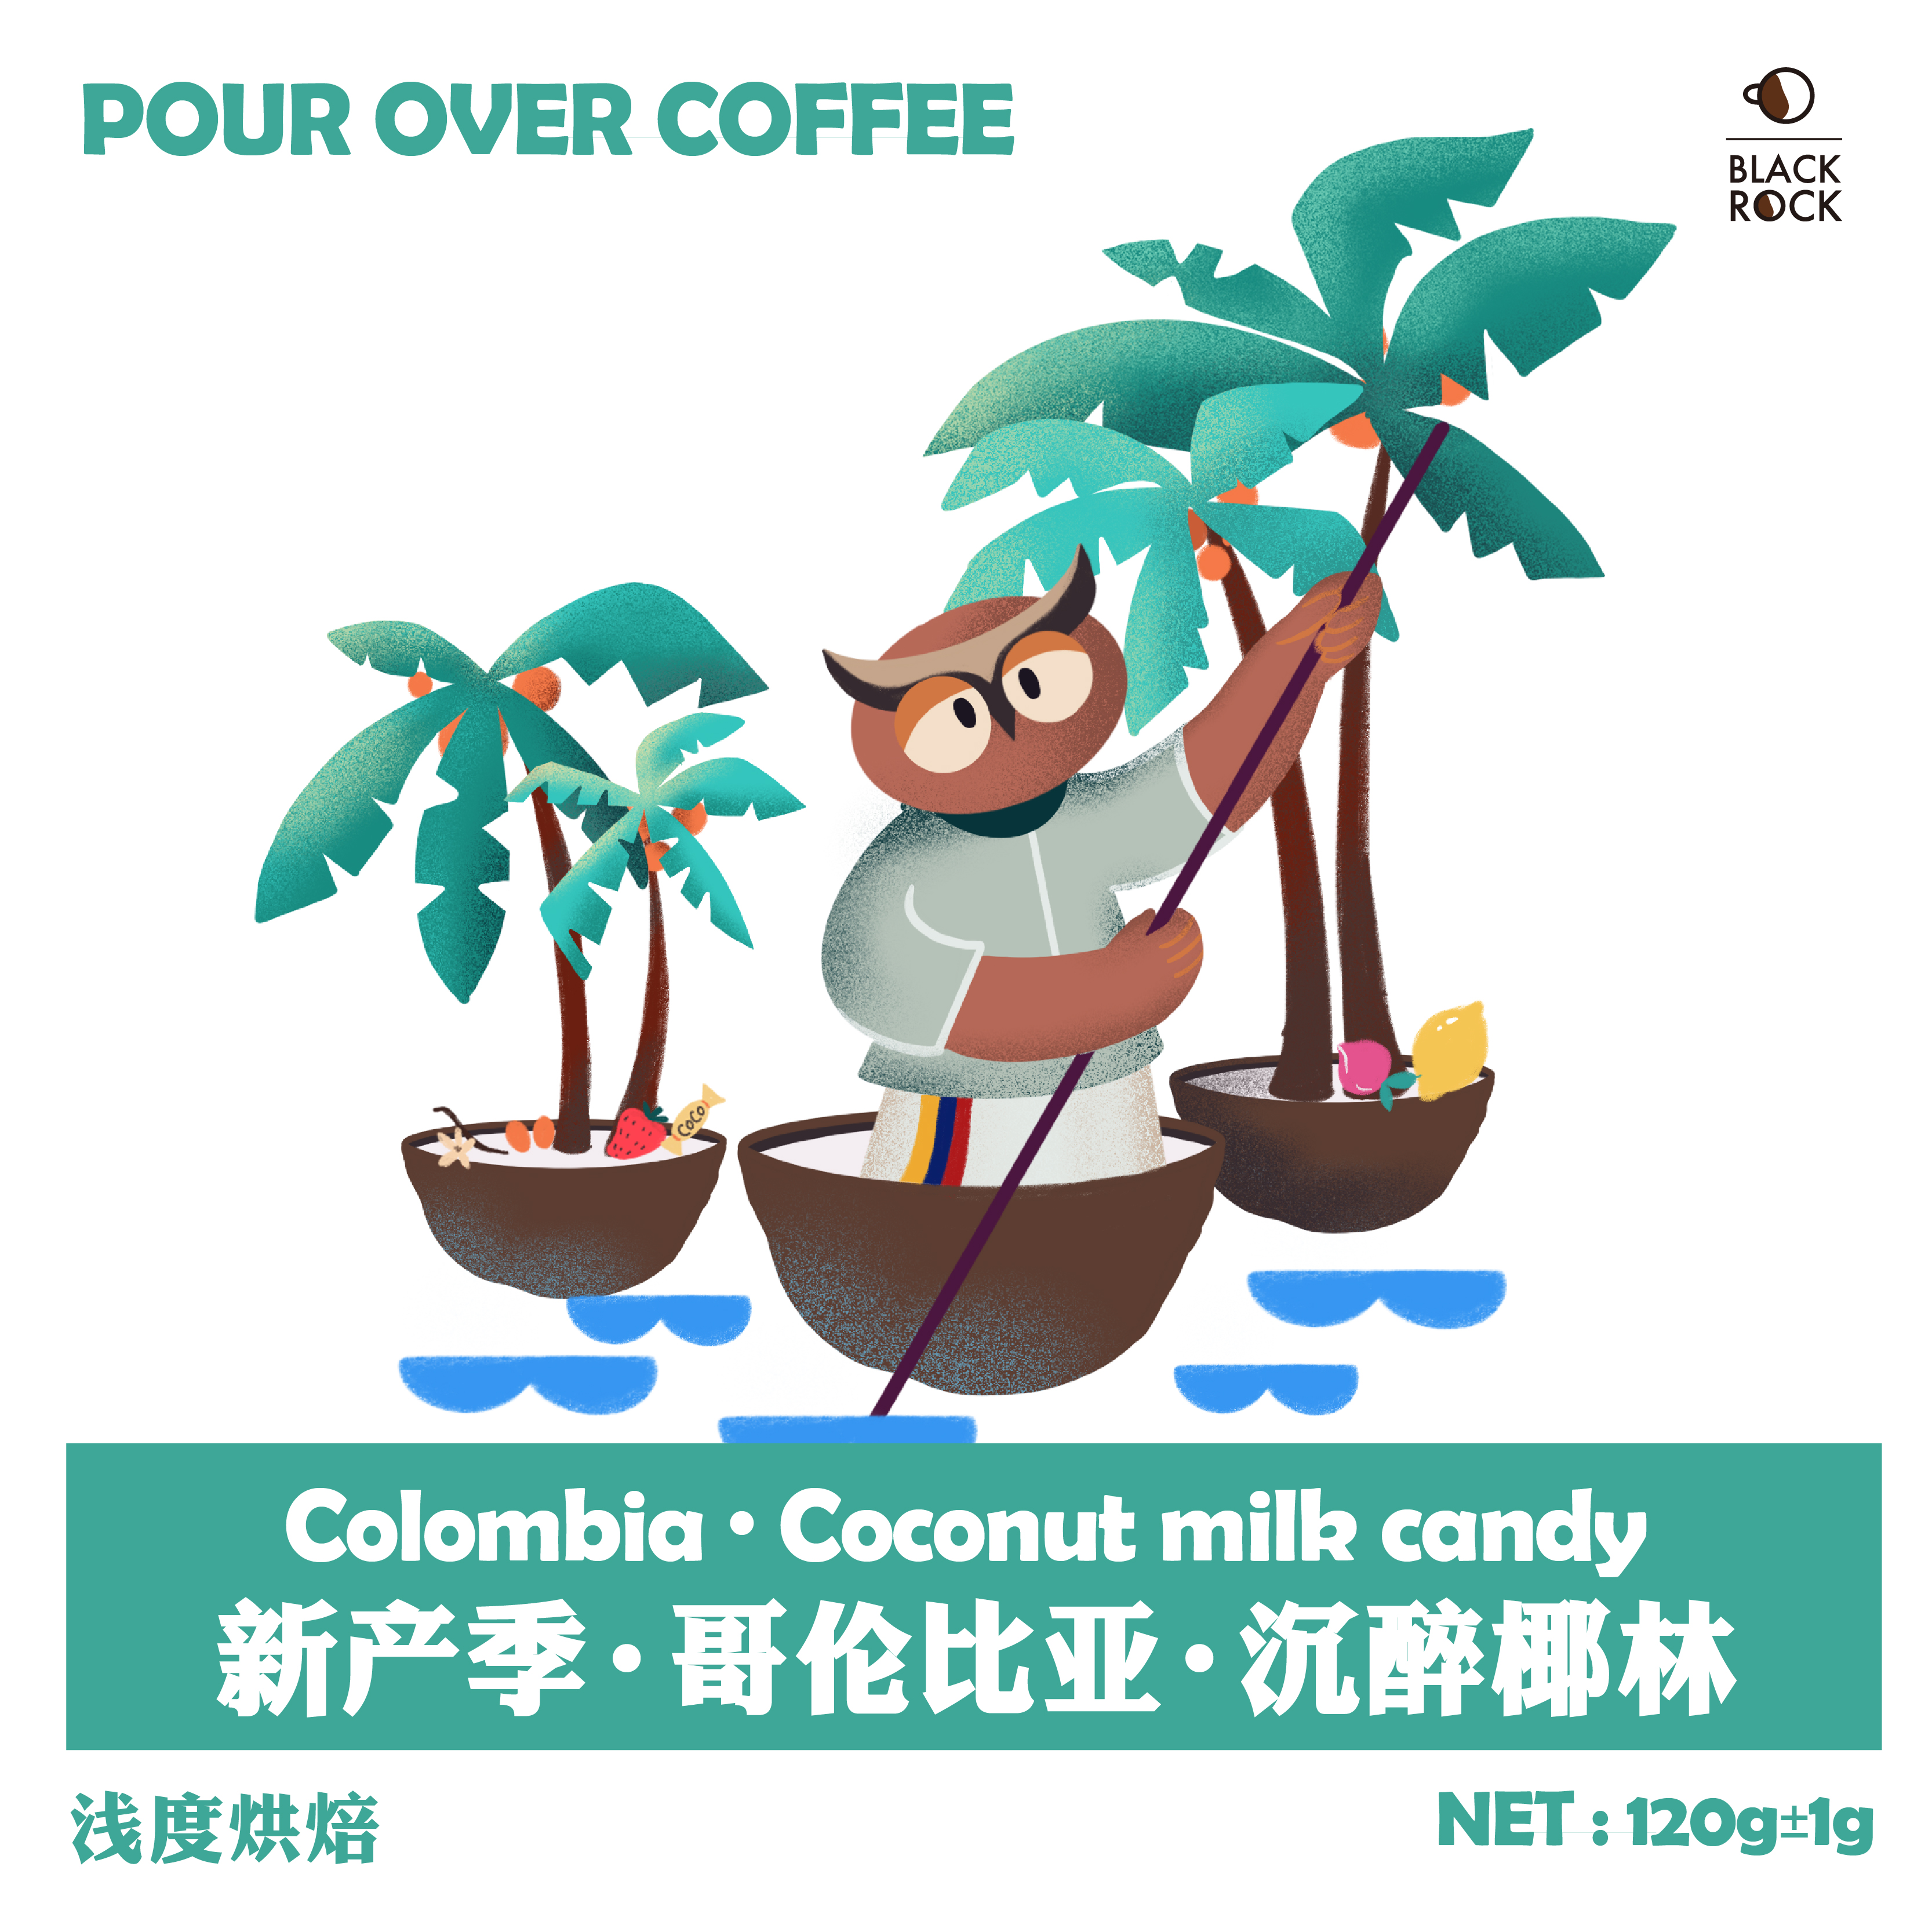 【黑石咖啡】沉醉椰林哥伦比亚椰子柠檬日晒单品咖啡手冲